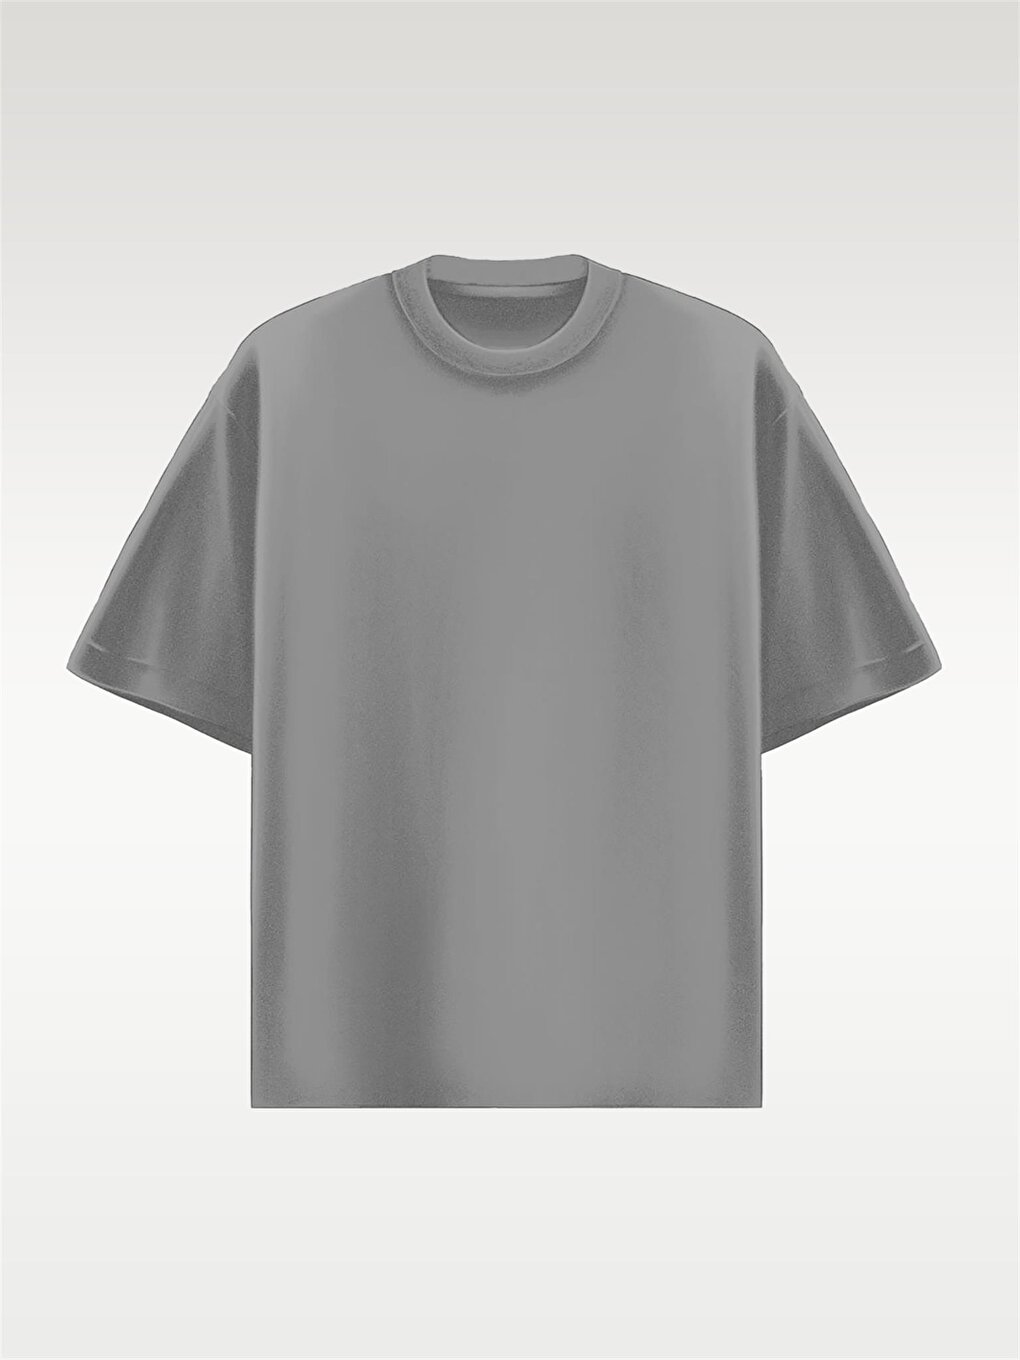 Базовая футболка Oversize Серая ablukaonline цена и фото